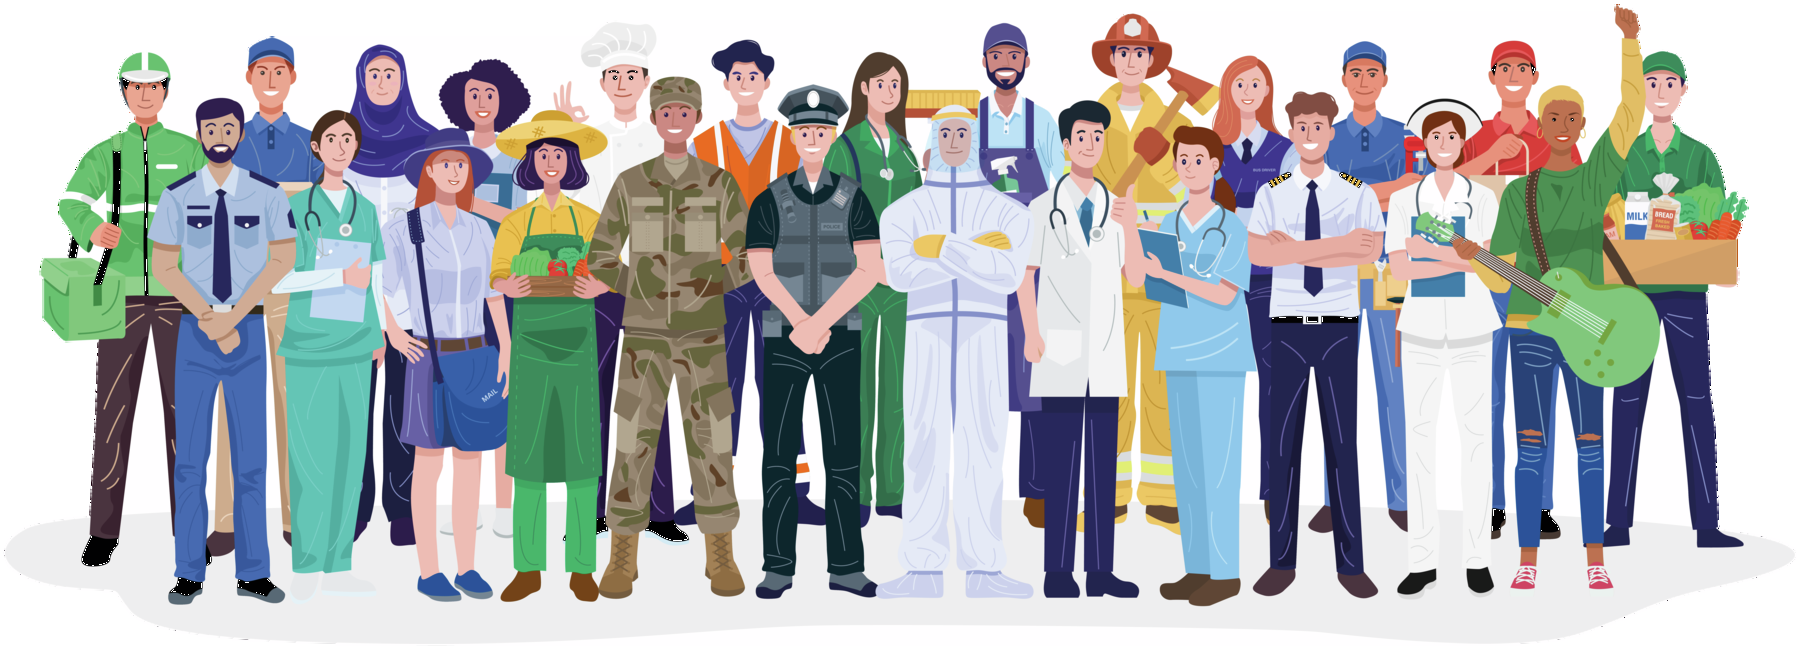 Ilustração. Homens e mulheres reunidos. Eles usam uniformes ou roupas características de profissões como: carteiro, médicos, soldado, policial, agricultor, bombeiro, musico, cozinheiro, entregador, professora, enfermeira, entre outros.